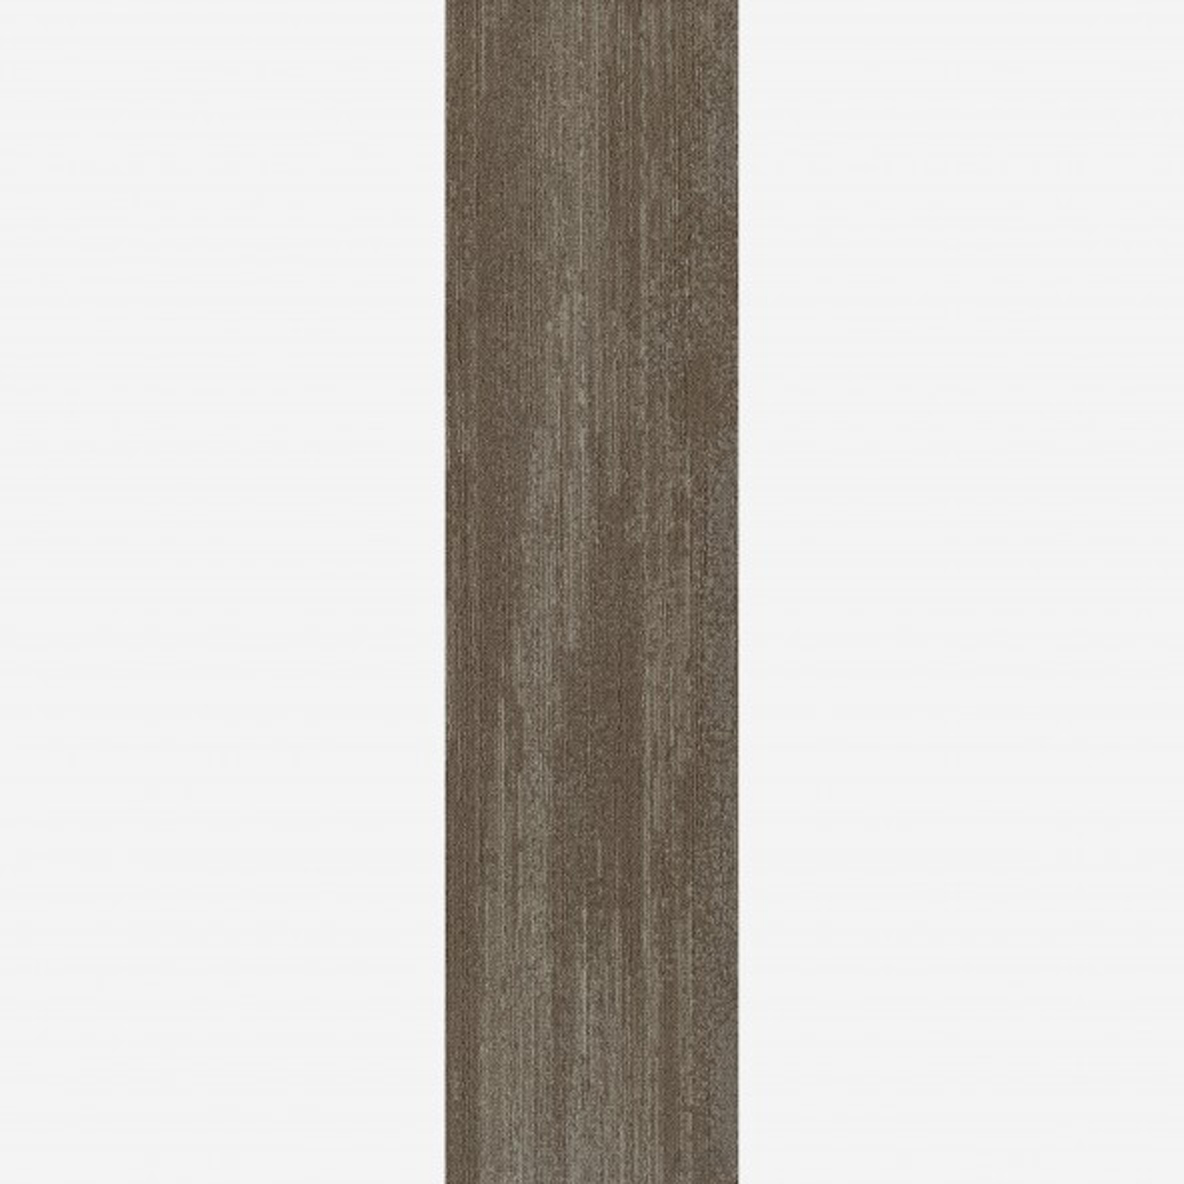 Ingrained Commercial Carpet Plank Neutral .28 Inch x 25 cm x 1 Meter Per Plank Nutmeg Light Full Tile